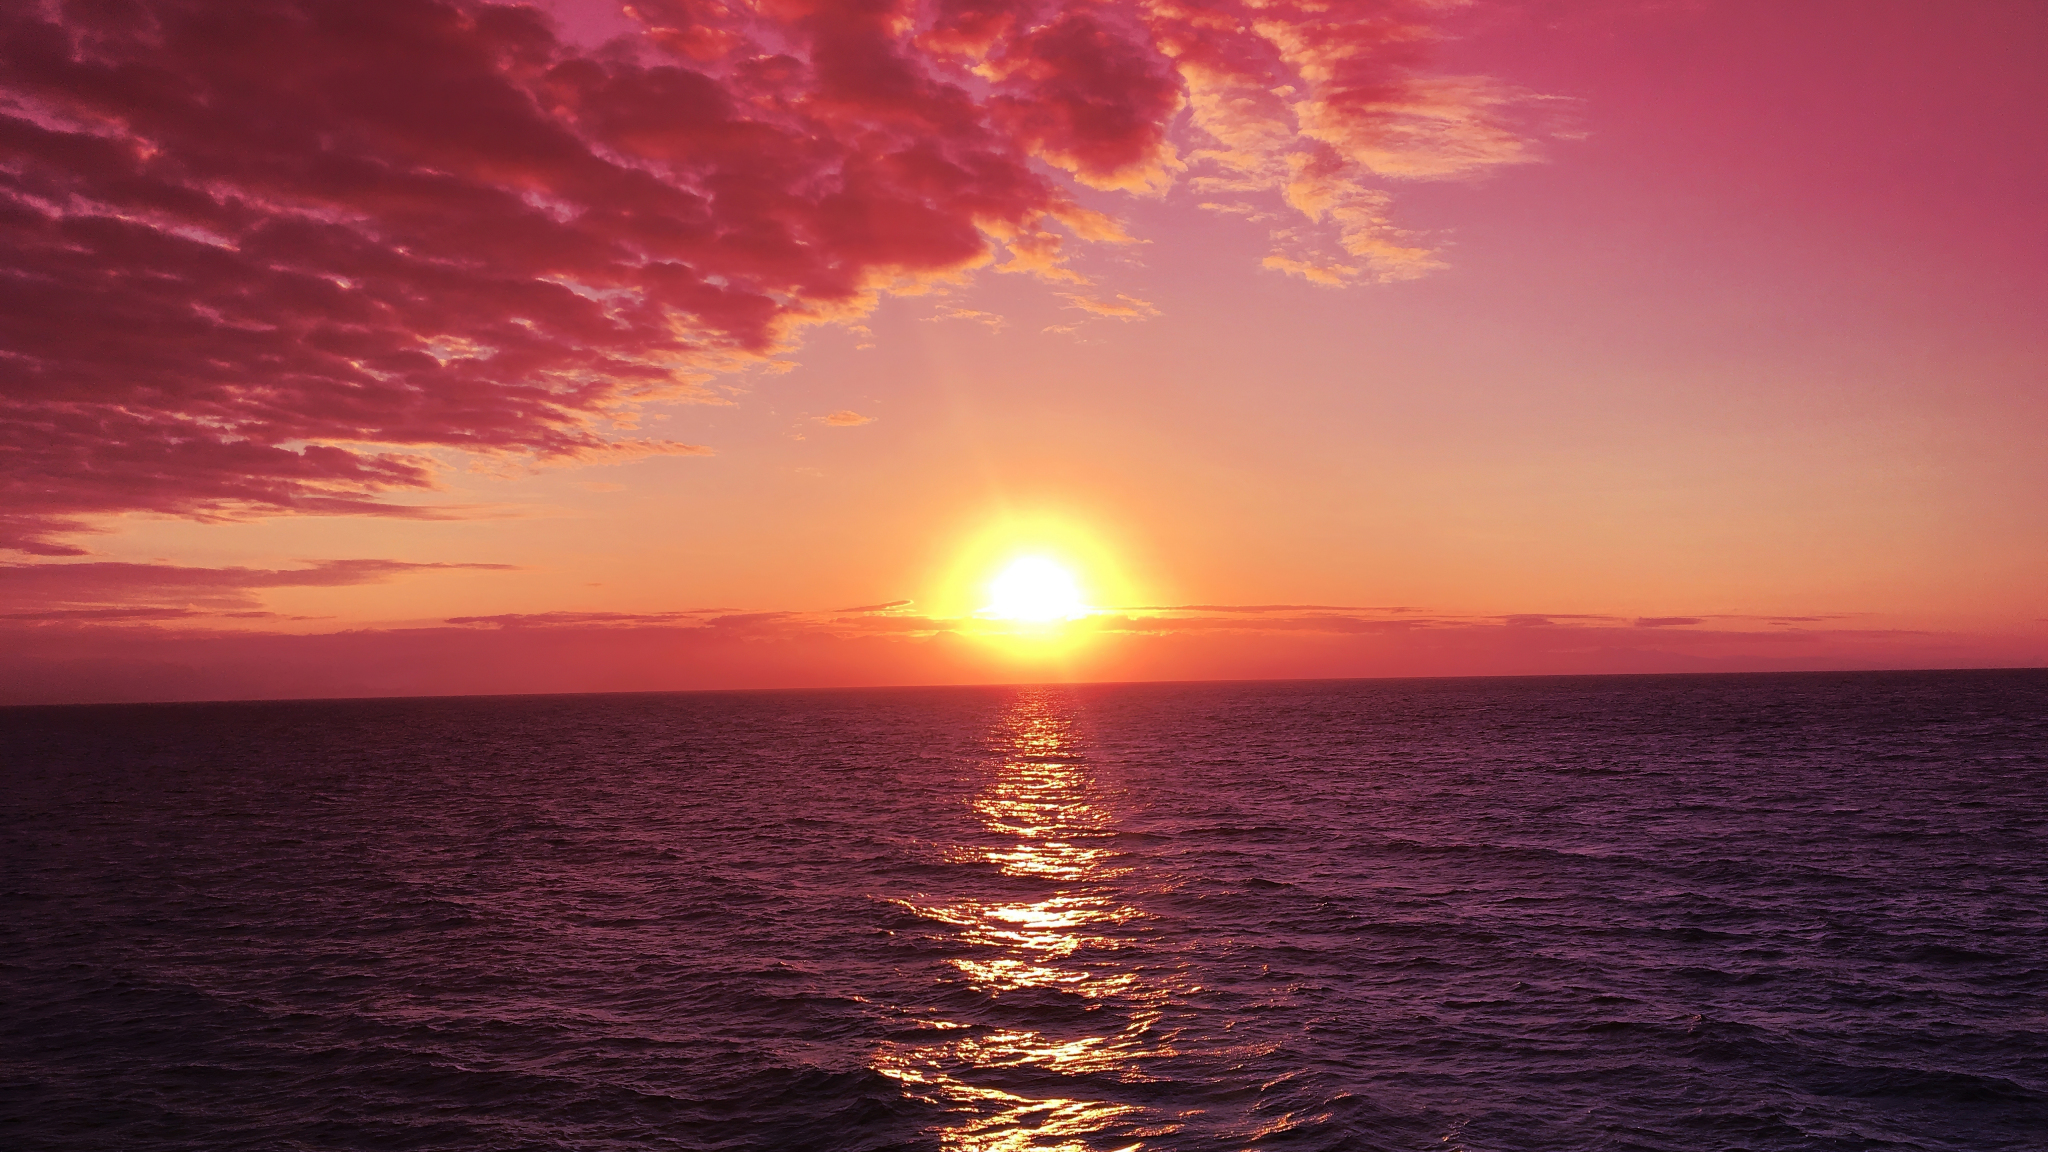 Download wallpaper 2048x1152 sunrises, red-pink sky, sea, nature, dual ...